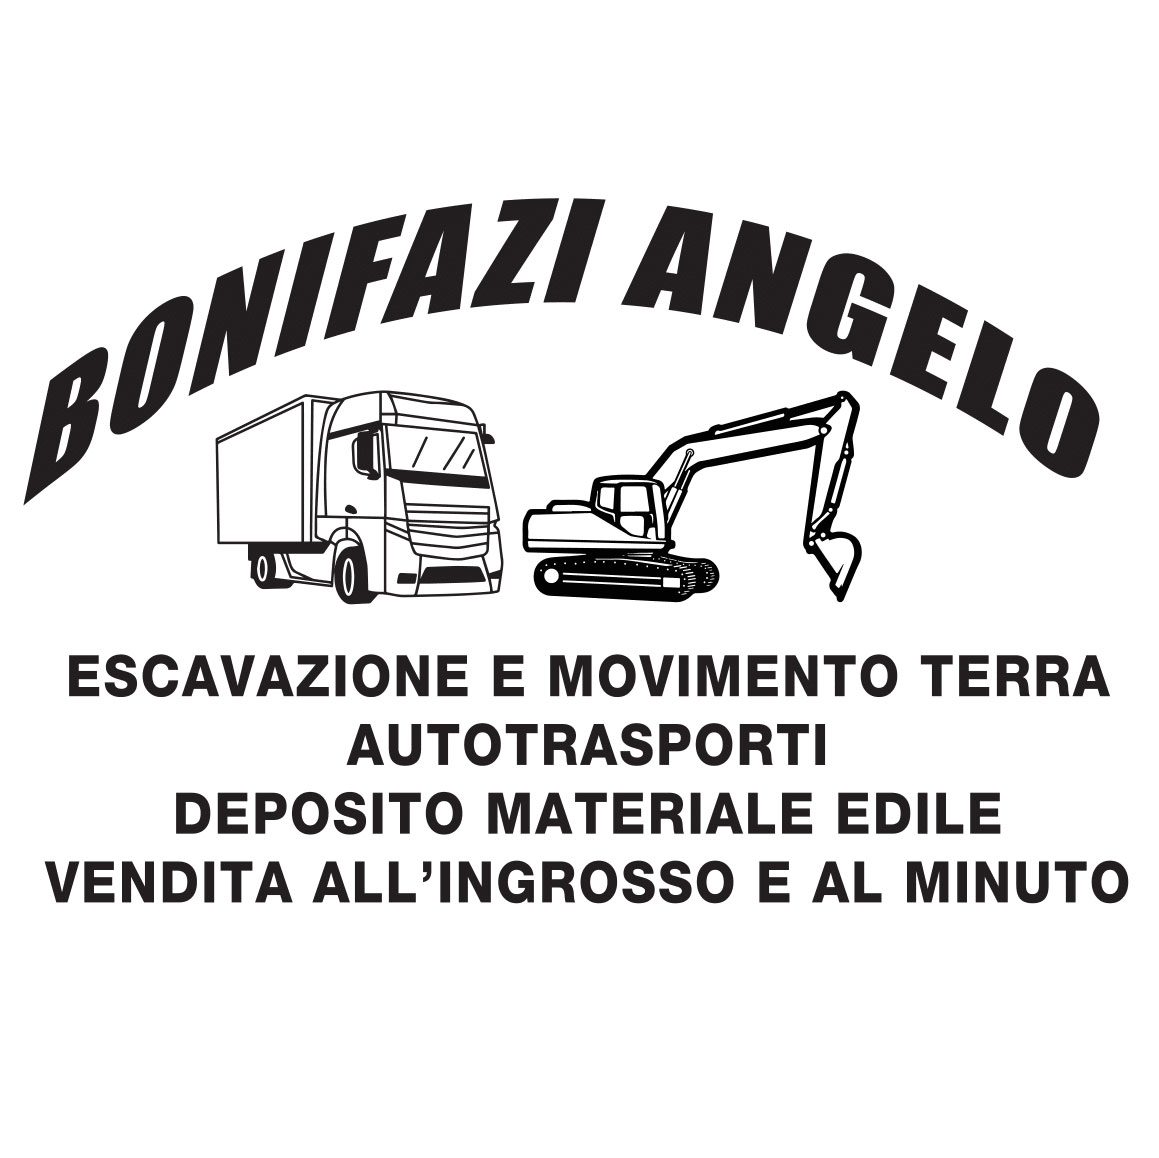 BONIFAZI-ANGELO-1